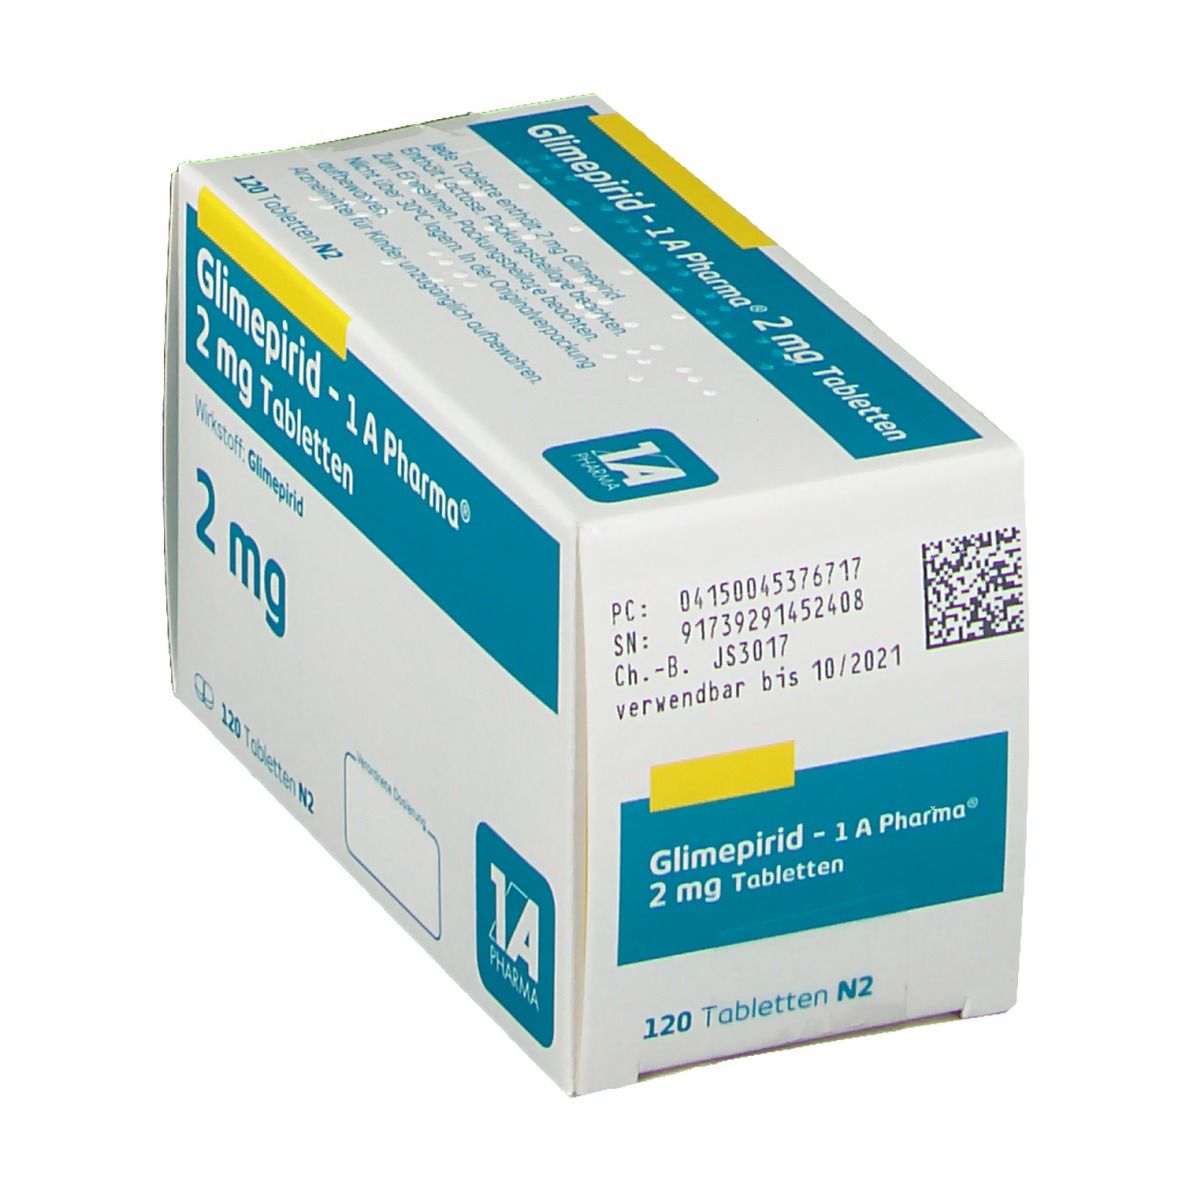 Glimepirid 1A Pharma® 2Mg